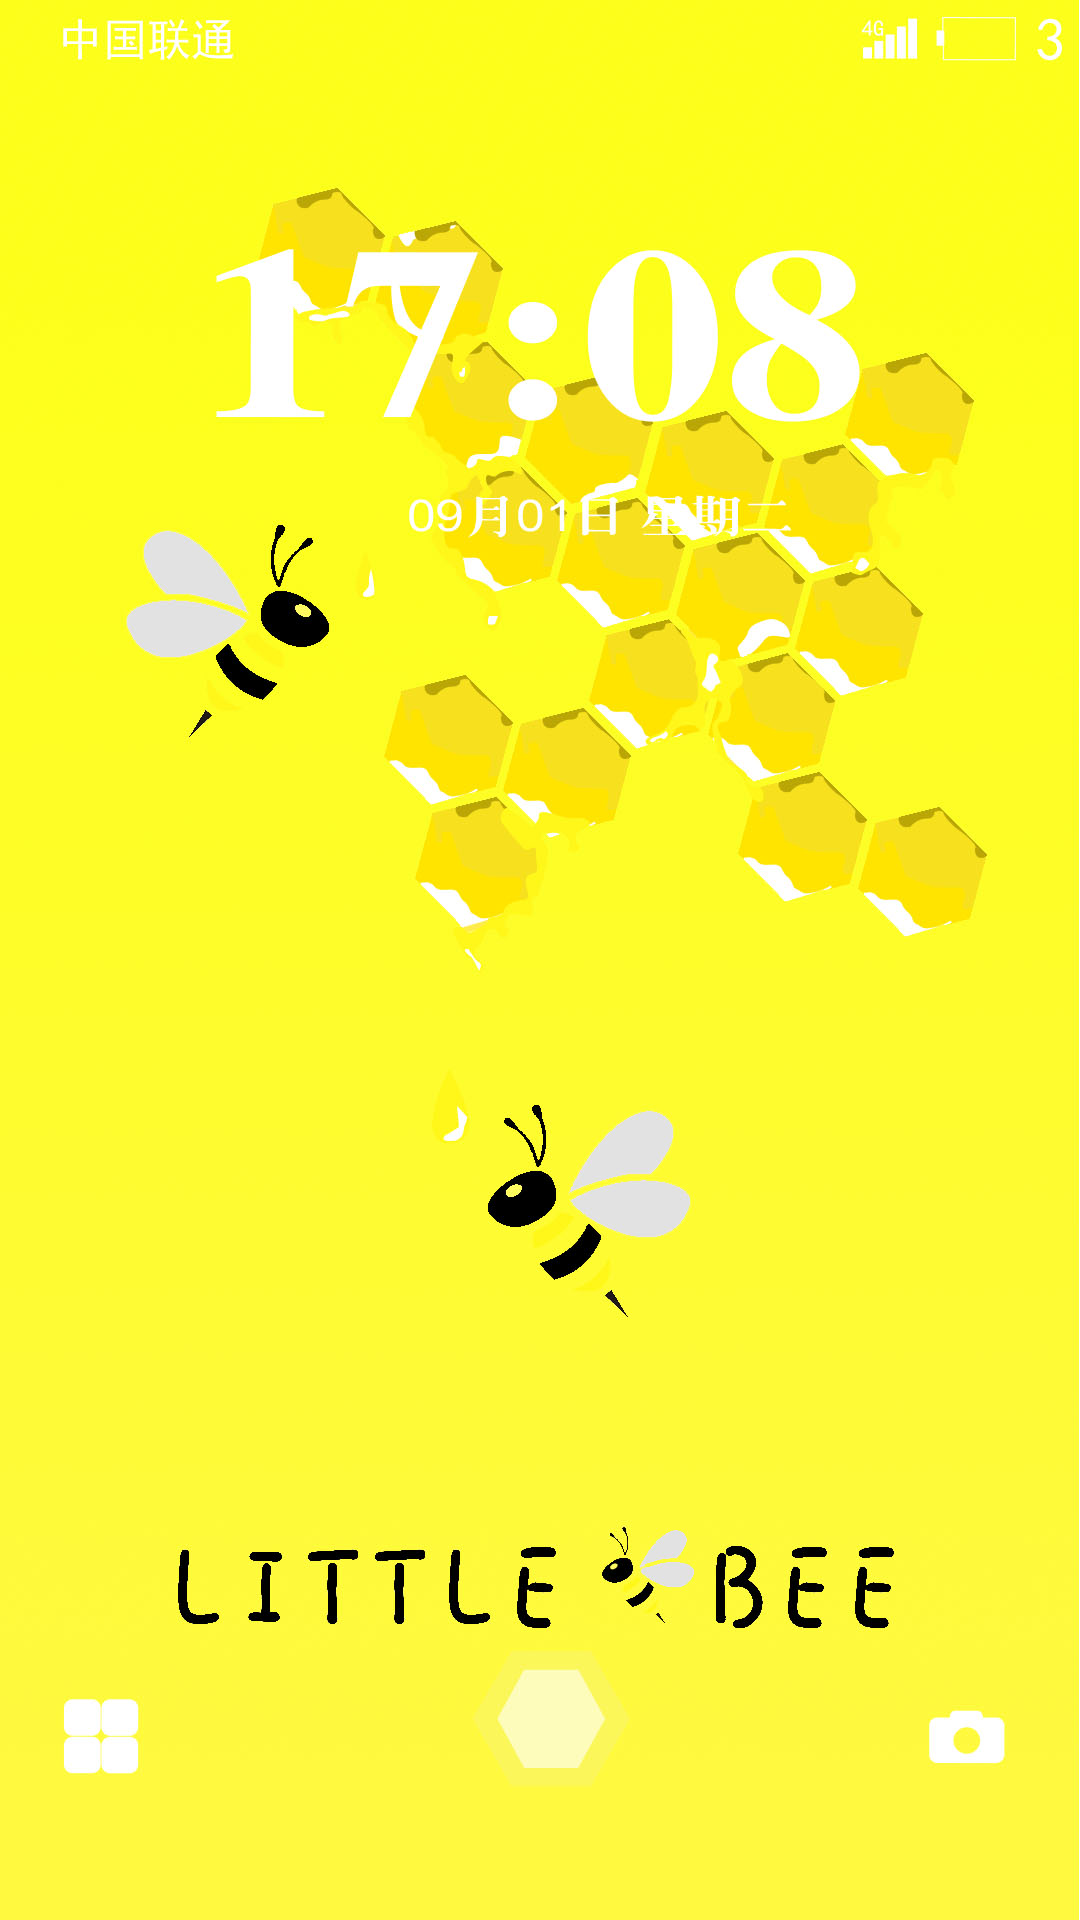 蜜蜂手机主题